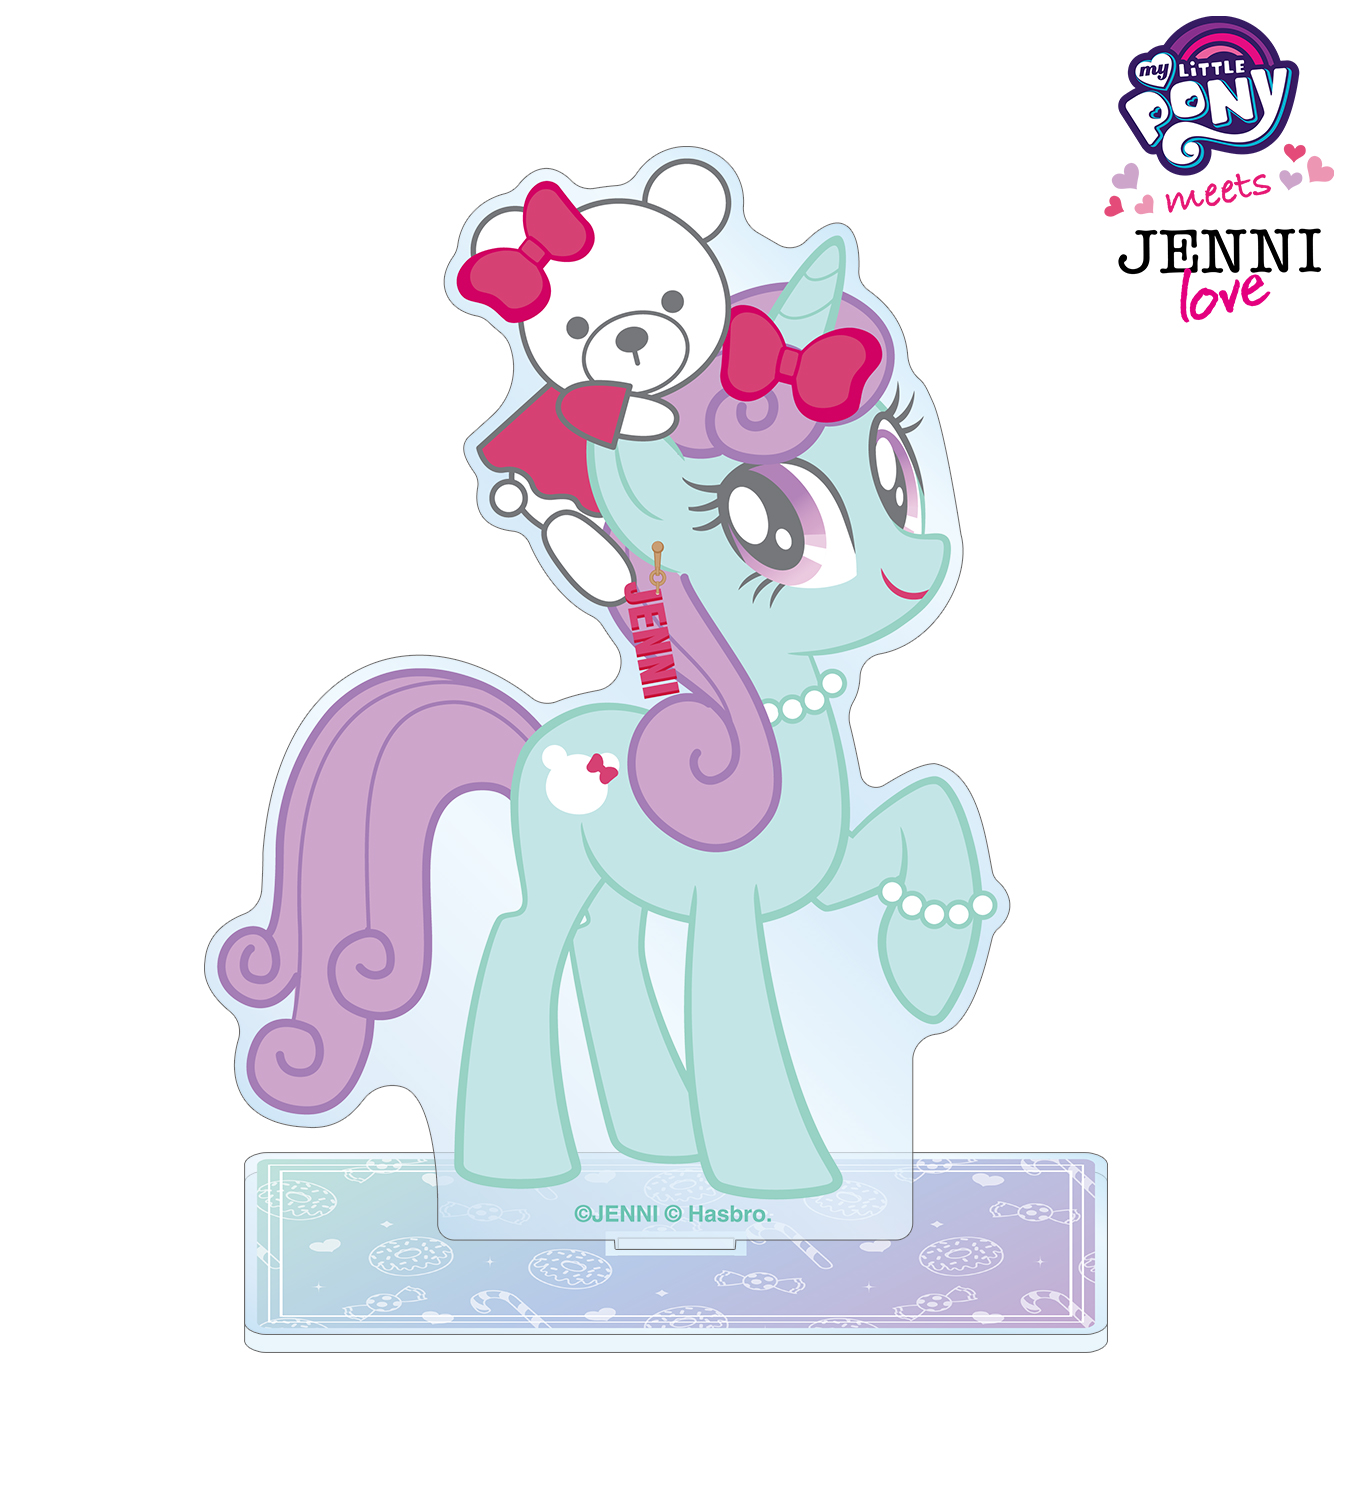 『My Little Pony meets JENNI love』のBIGアクリルスタンド、1ポケットパスケースの受注を開始！！アニメ・漫画のオリジナルグッズを販売する「AMNIBUS」にてのサブ画像2